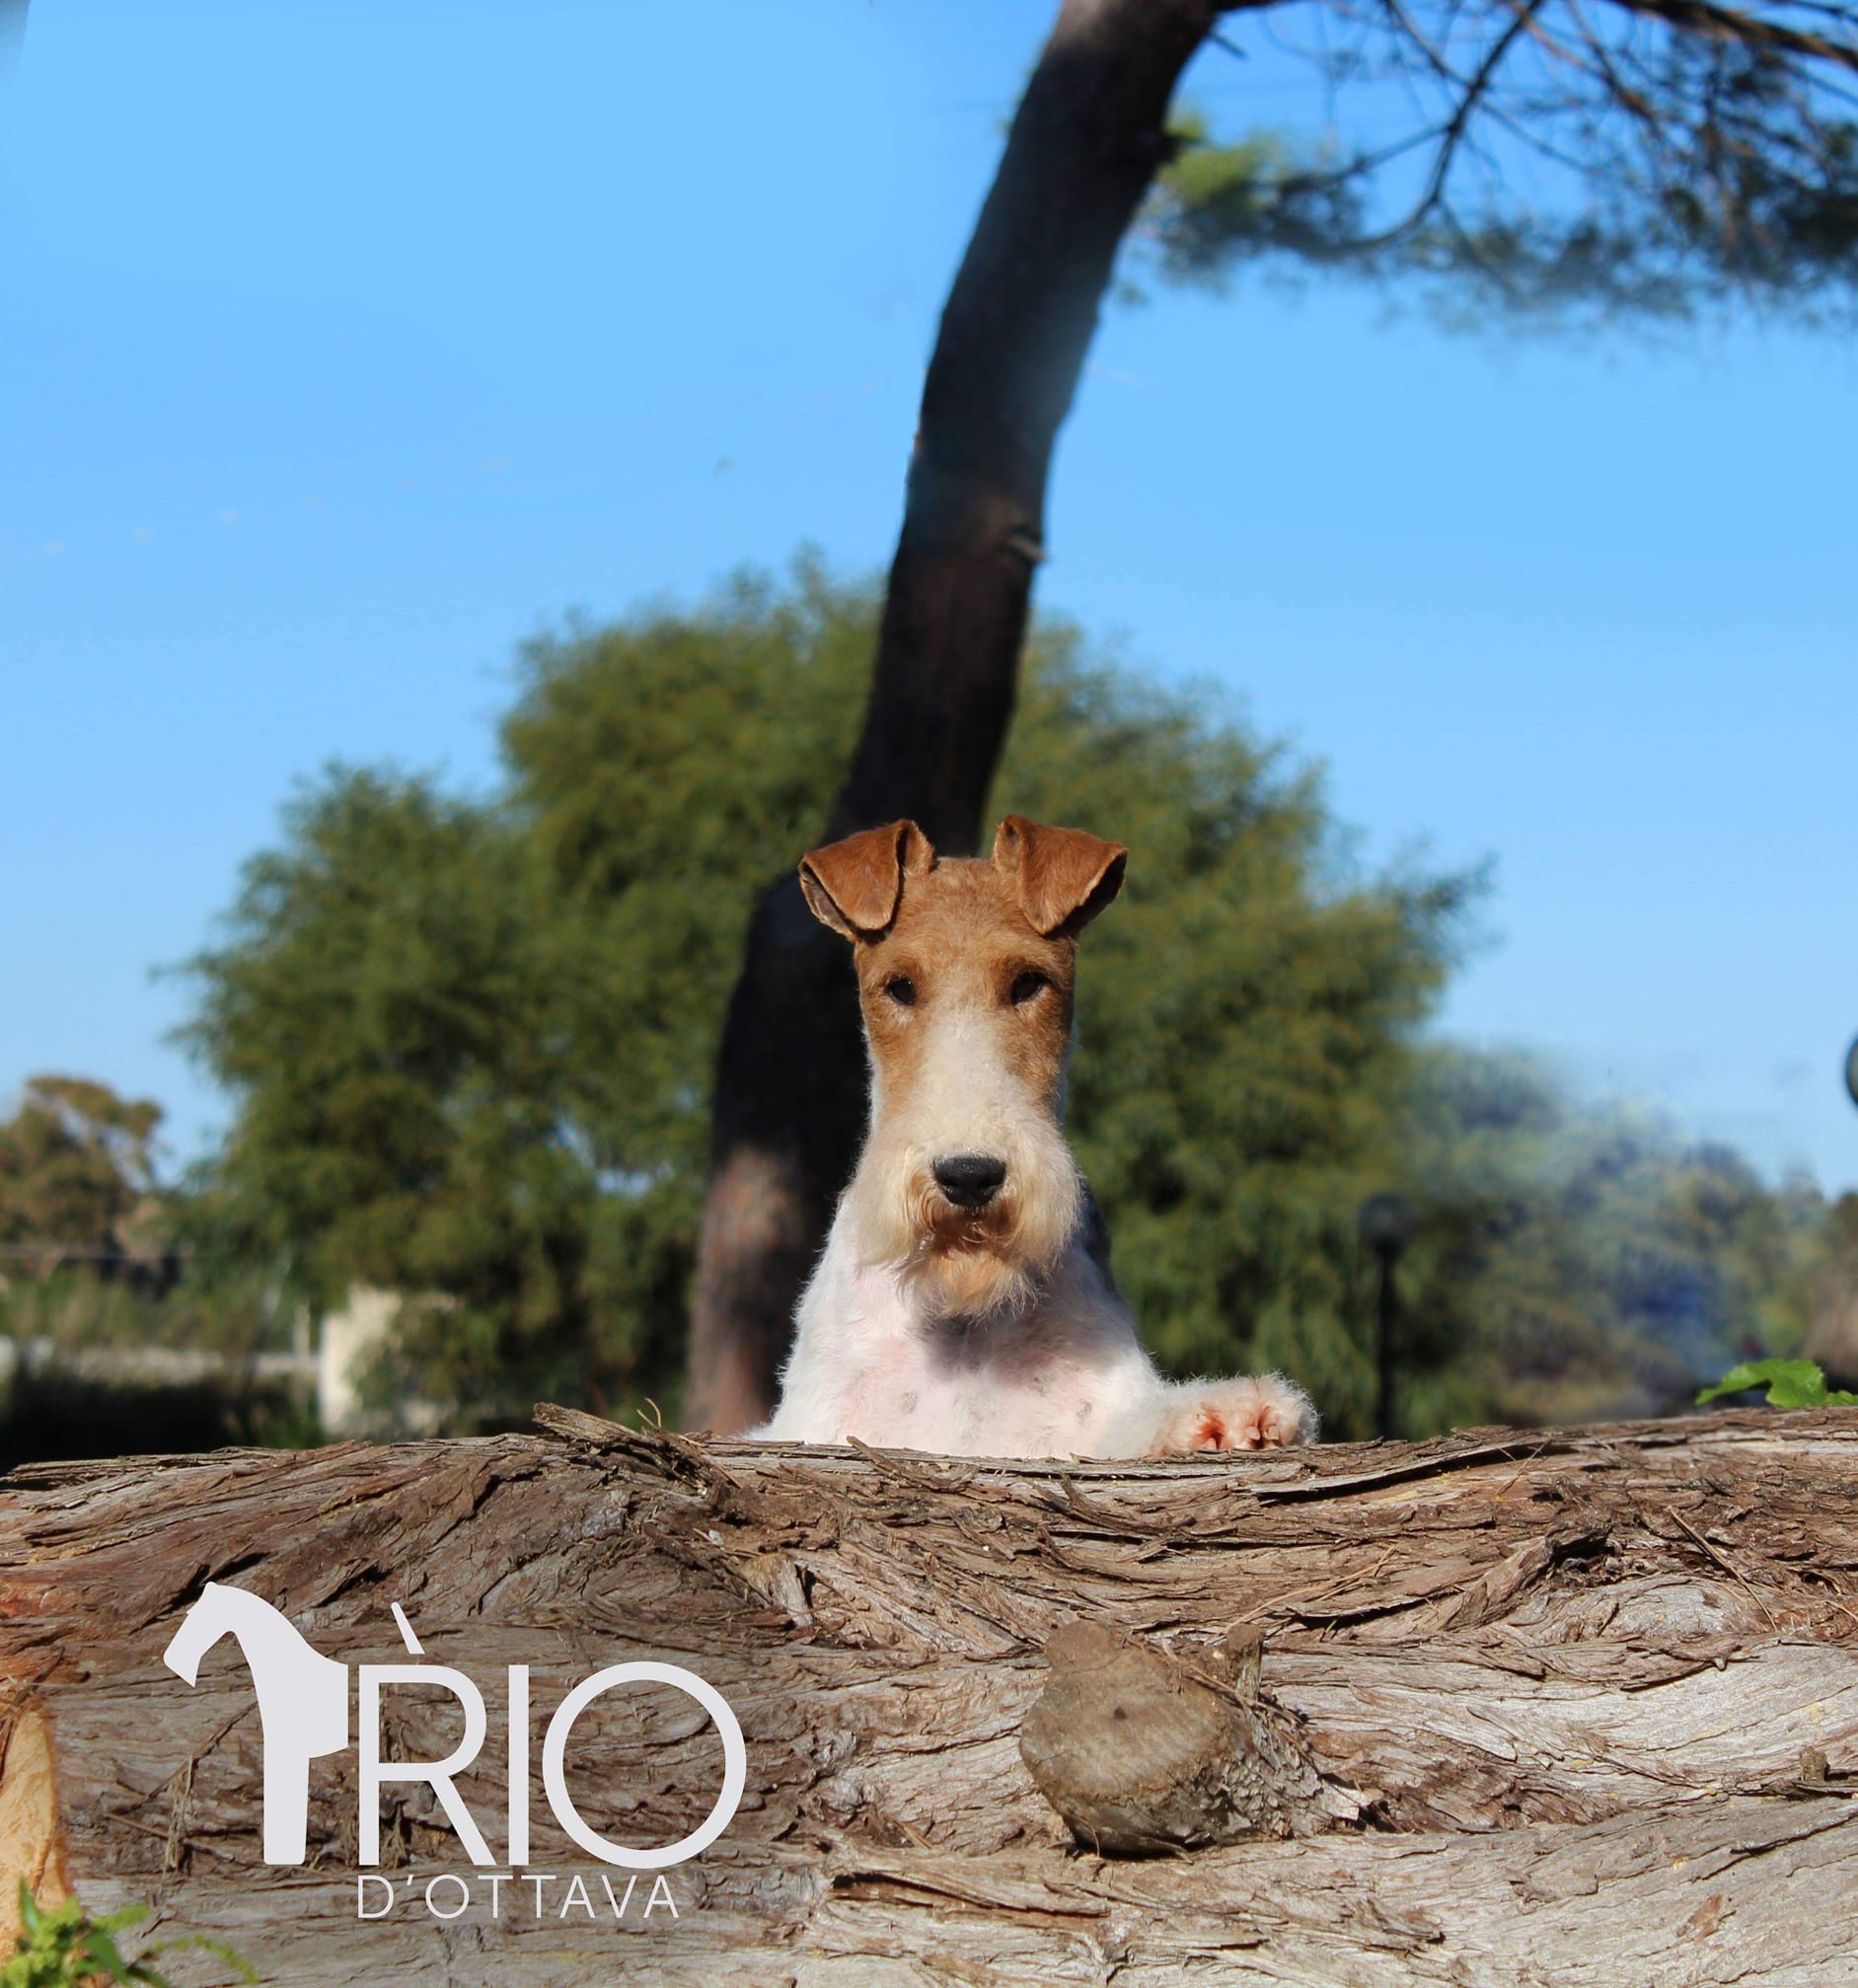 Rio d'Ottava Wire Fox Terriers by Andrea Murtula – Rio D'Ottava Bram Stoker